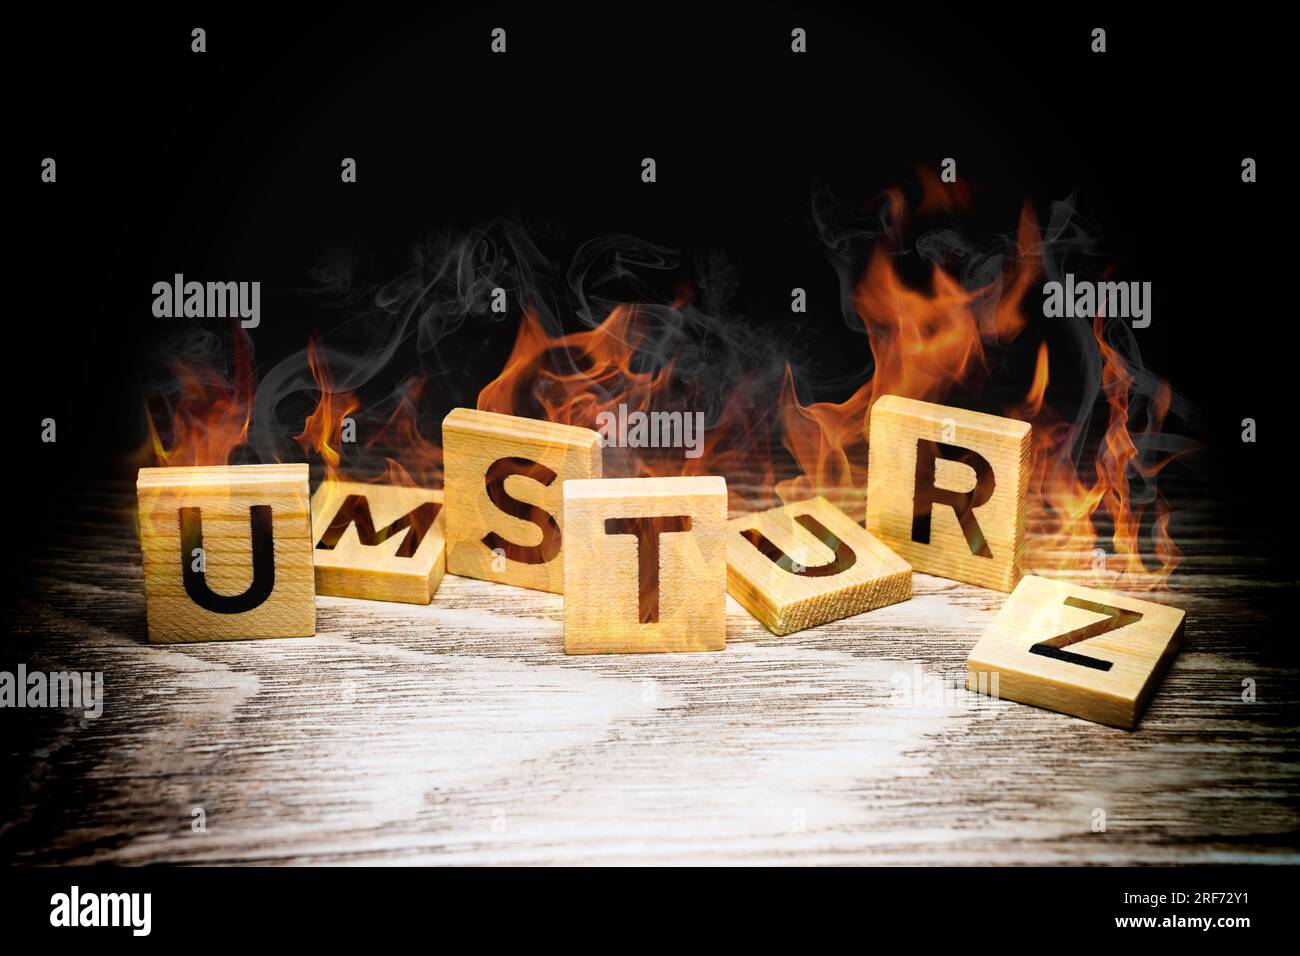 FOTOMONTAGE, Brennende Buchstaben bilden den Schriftzug Umsturz Stock Photo